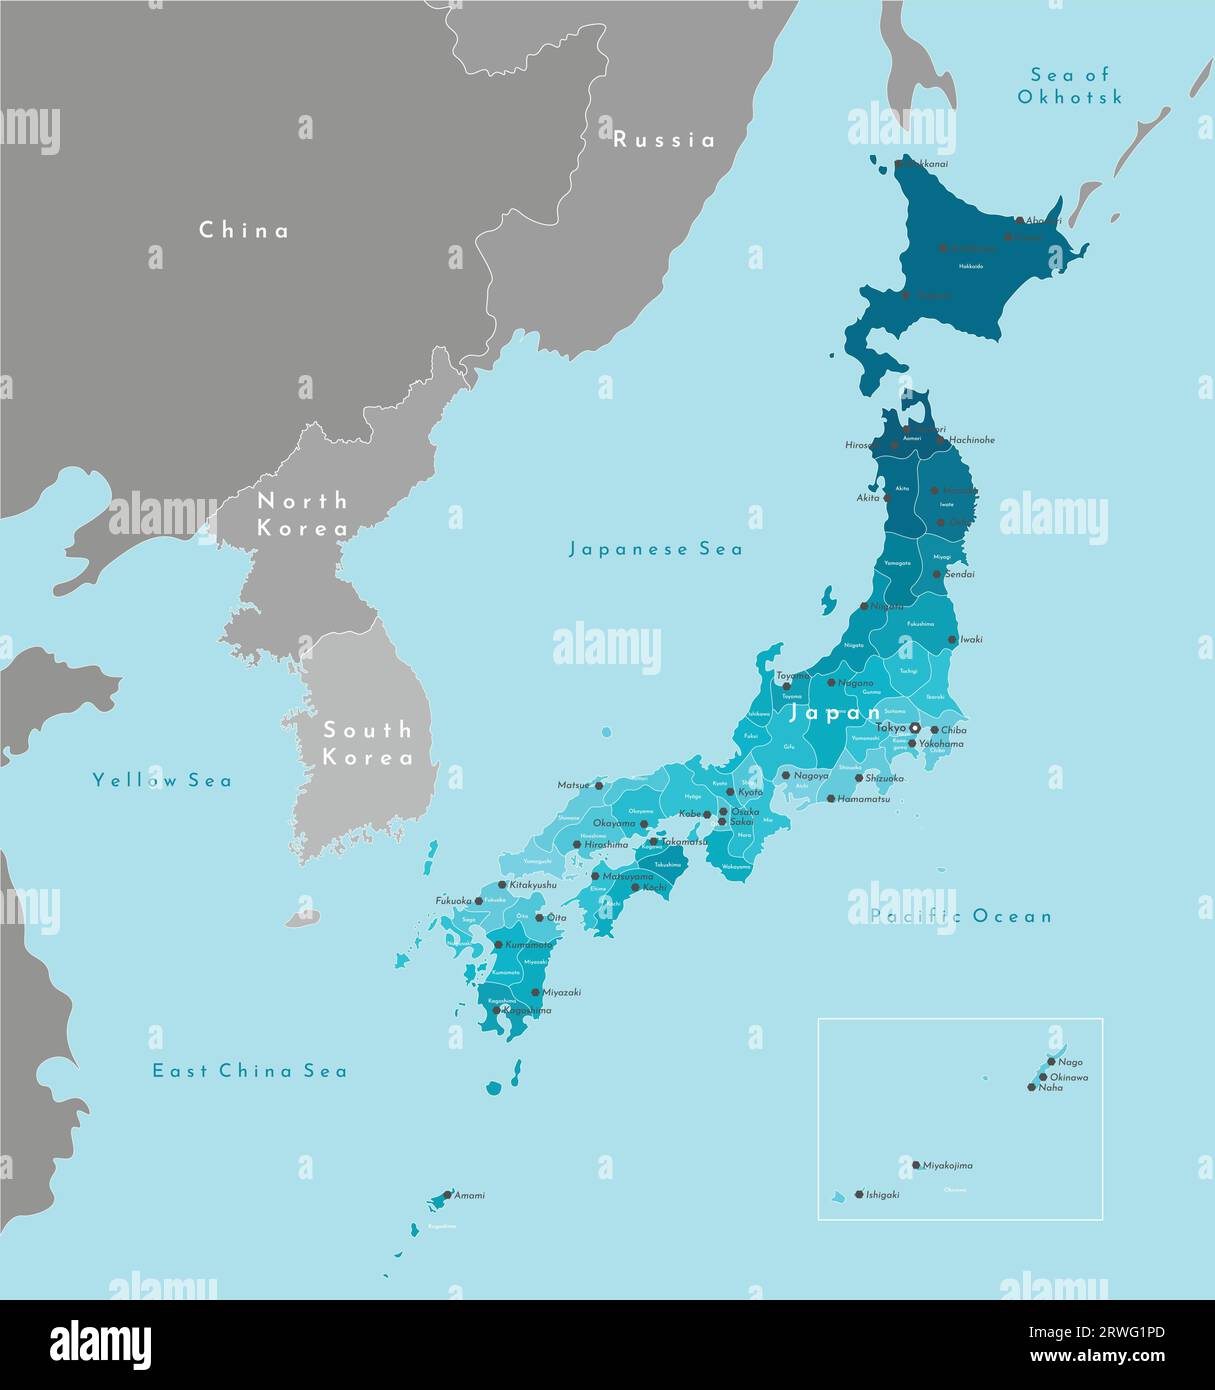 Vector illustration moderne. Carte géographique simplifiée du Japon et des pays les plus proches. Fond bleu des mers et de l'océan Pacifique. Noms de japonais Illustration de Vecteur